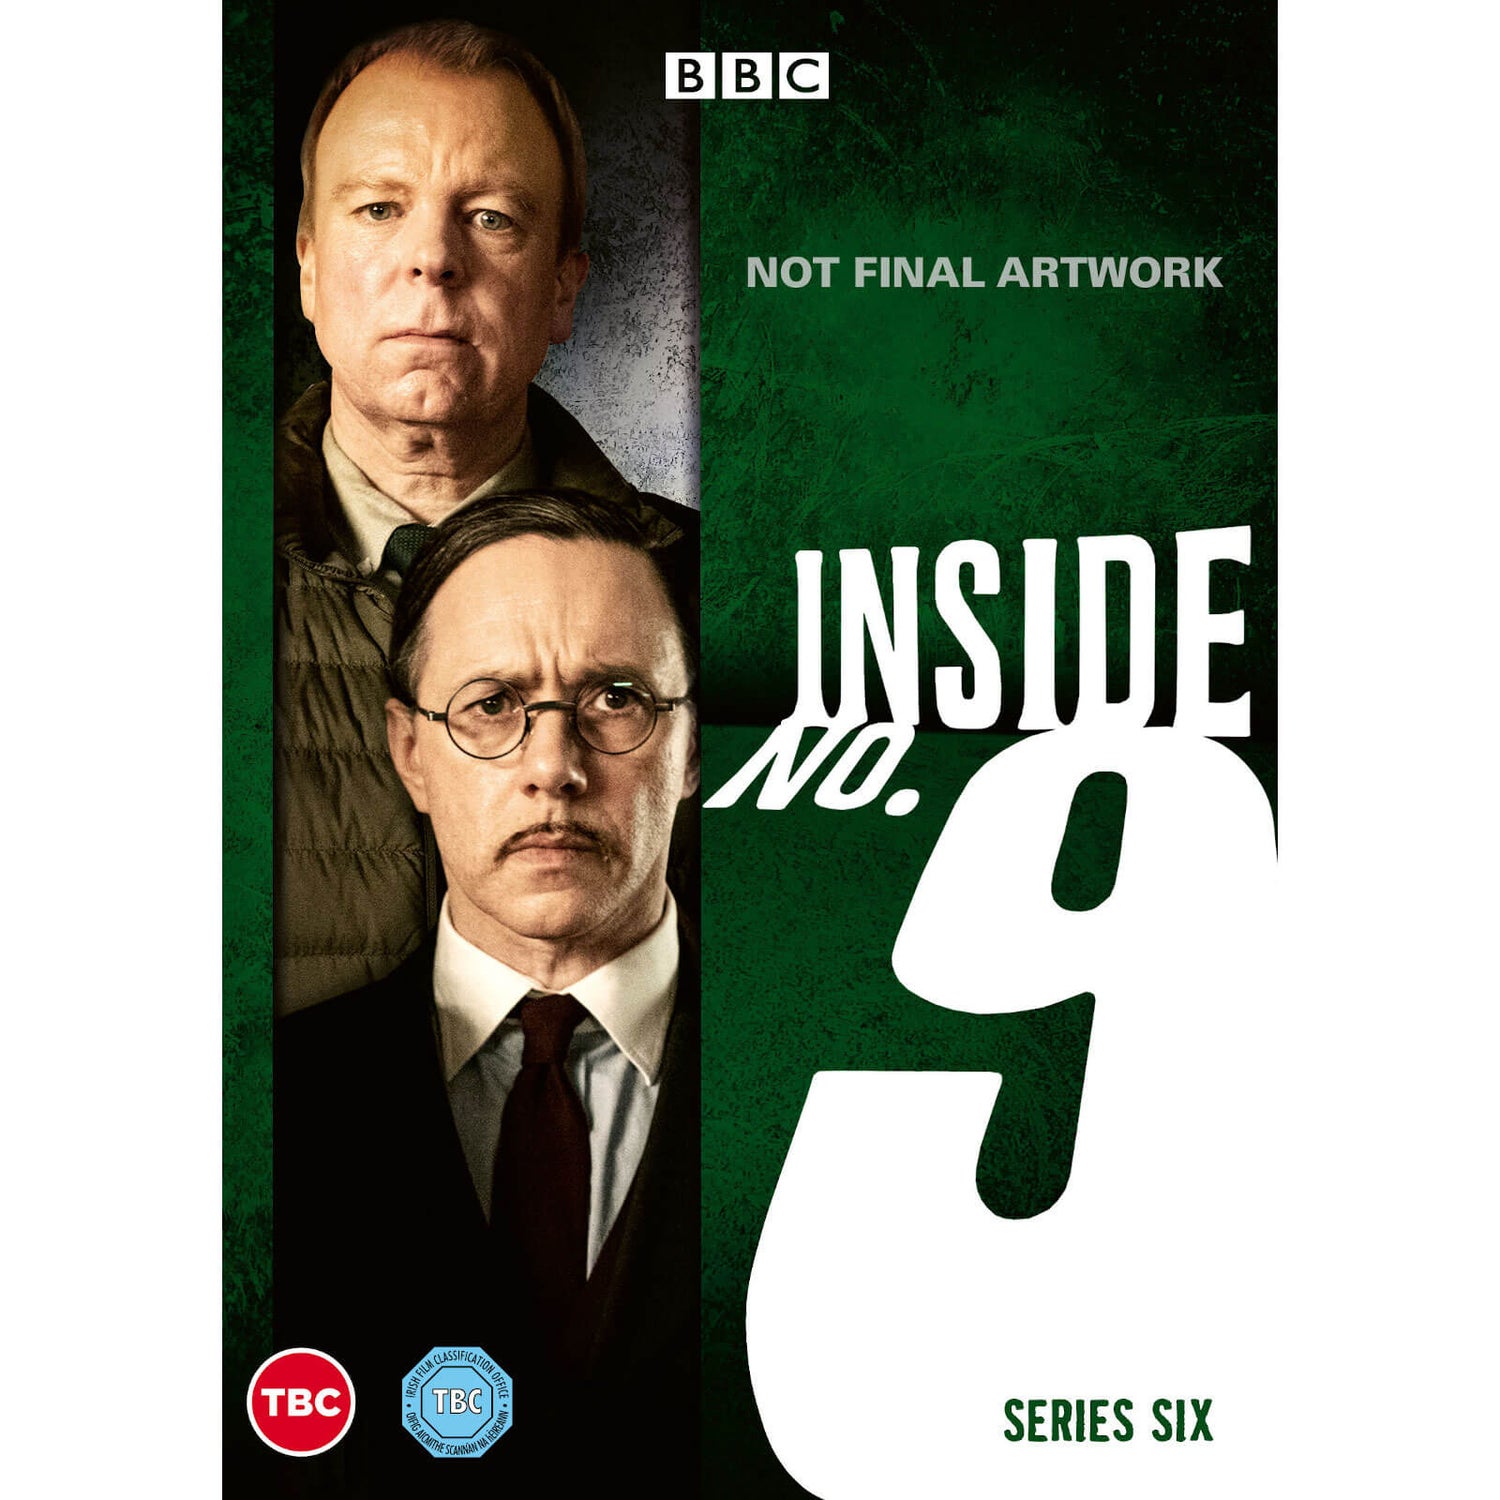 Inside No.9 - Series 6